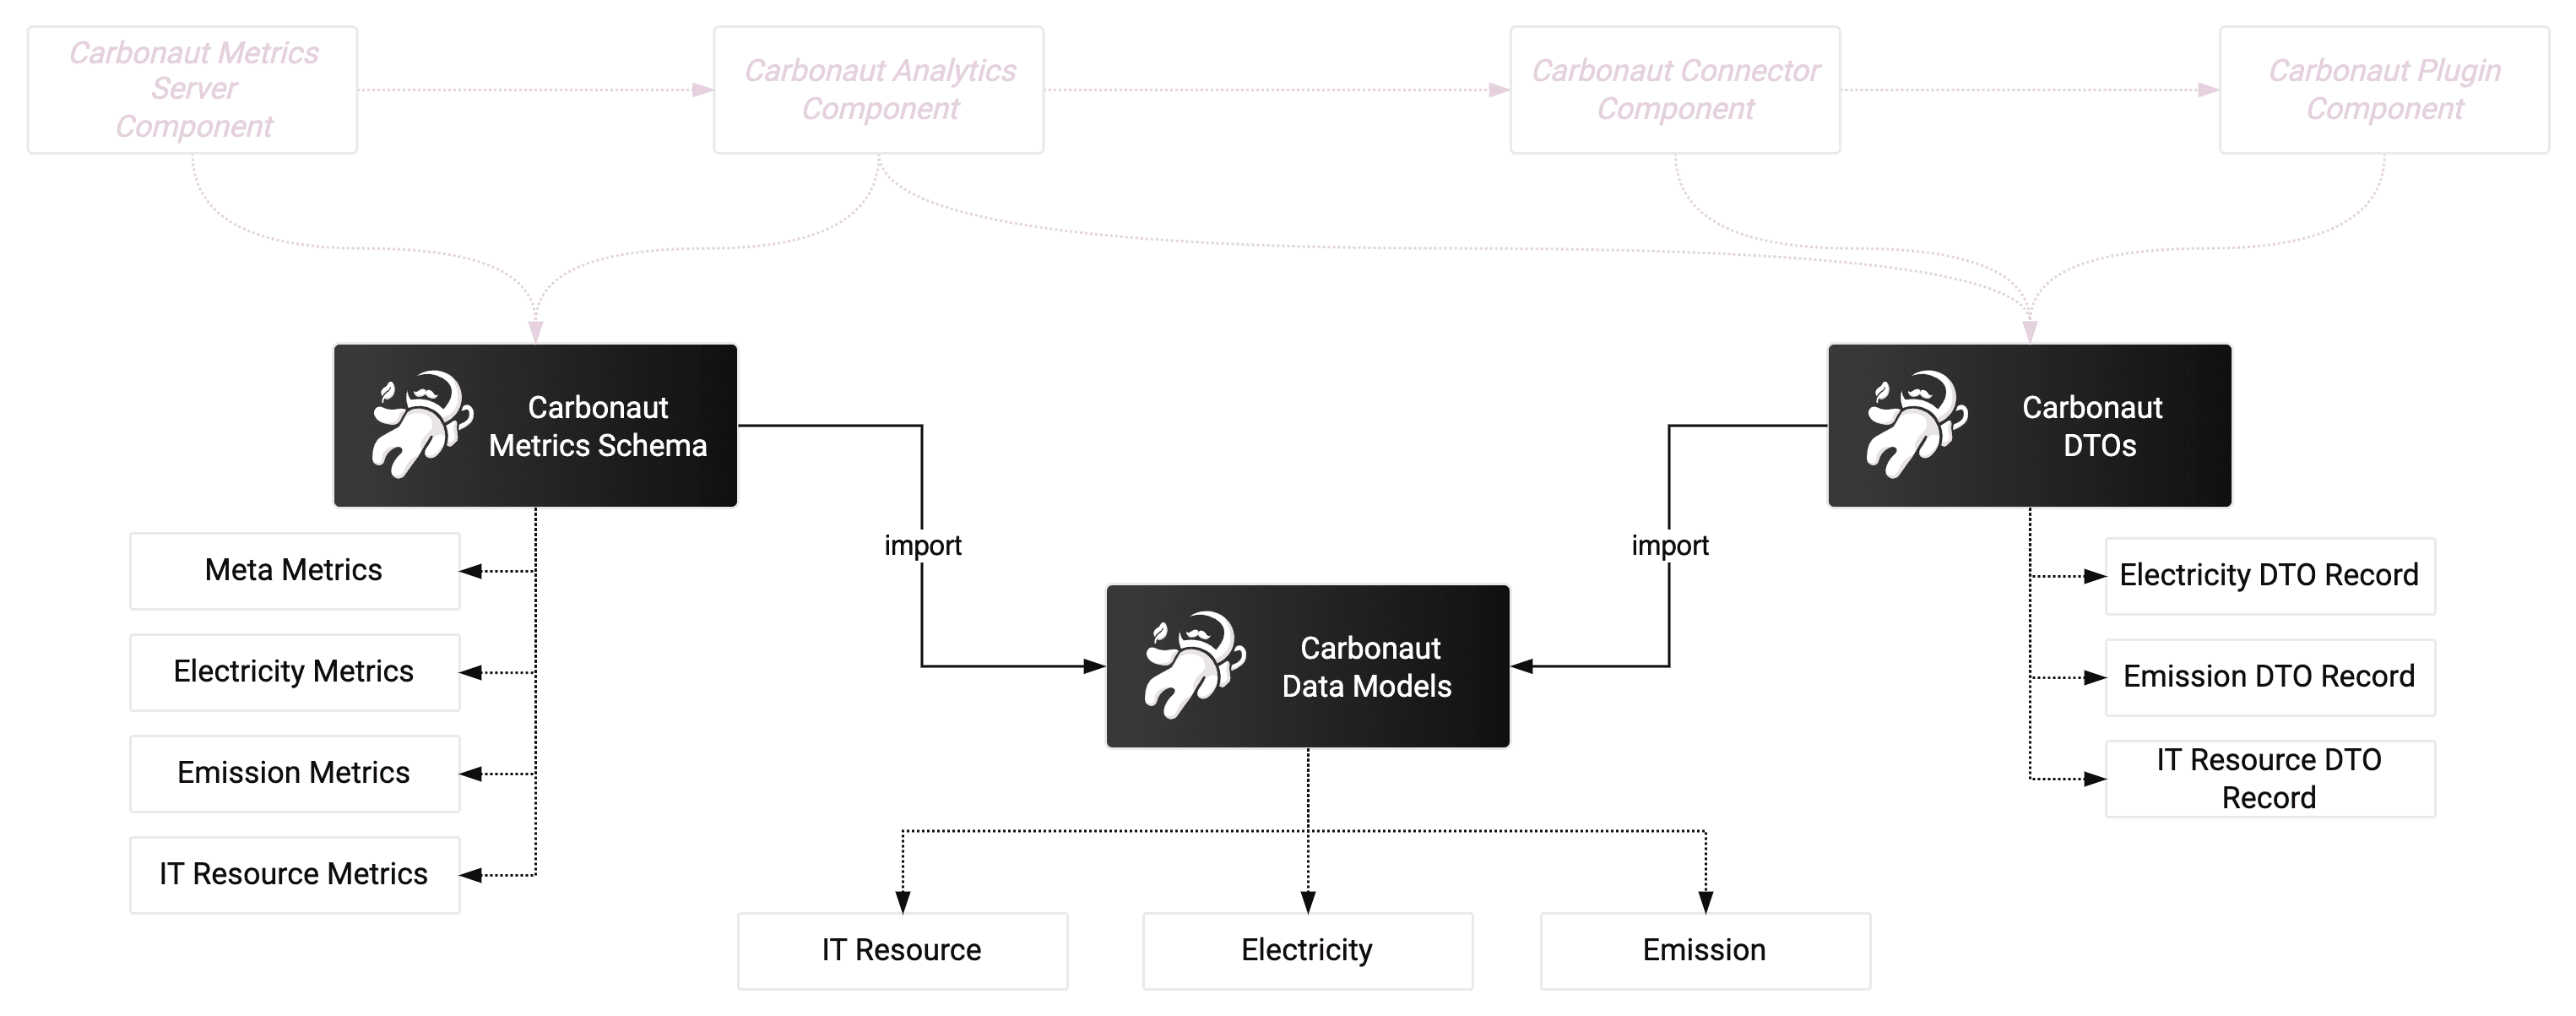 Carbonaut Data Schema Overview